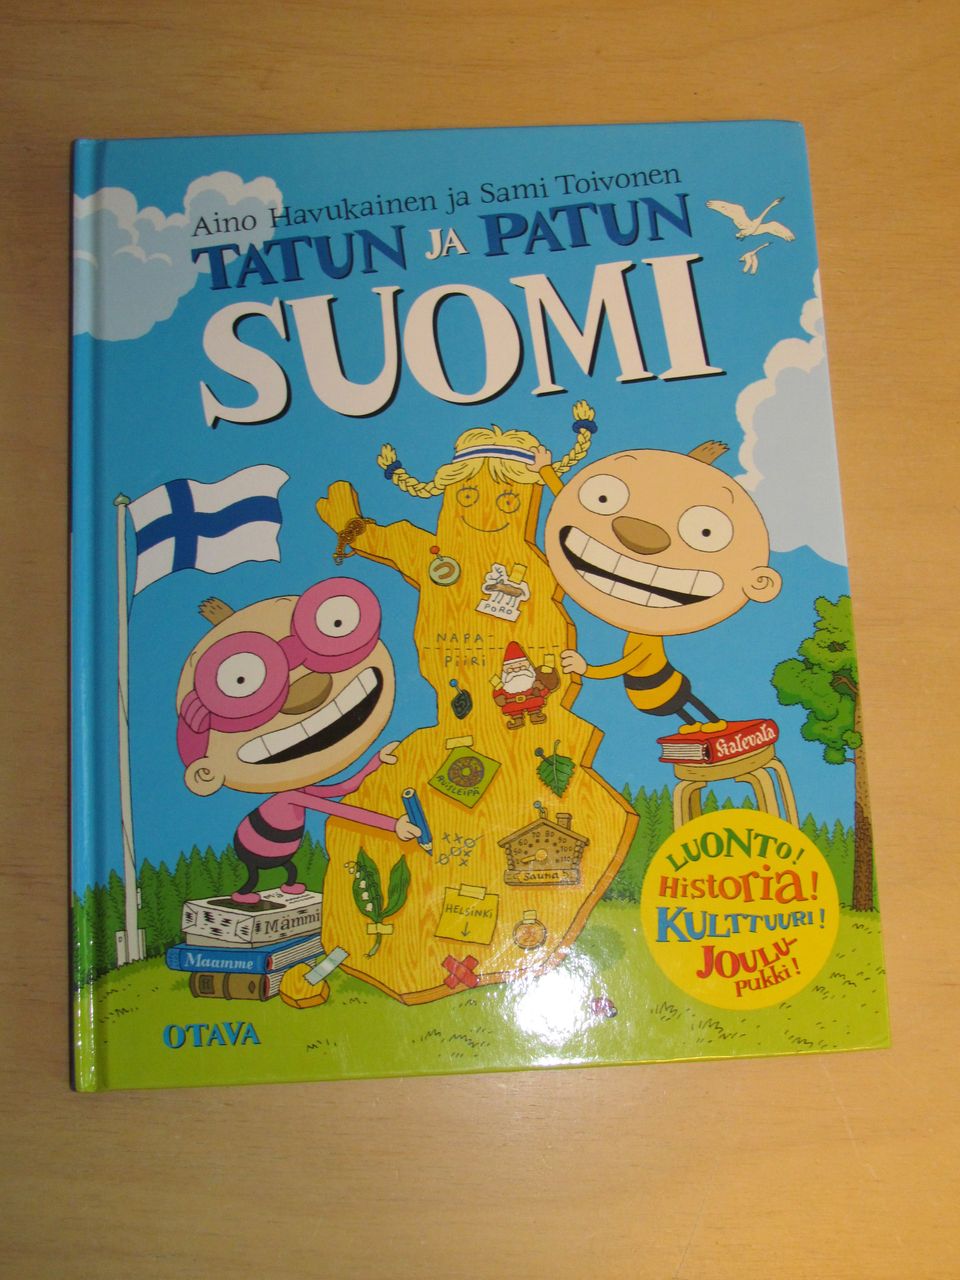 Tatun ja Patun Suomi